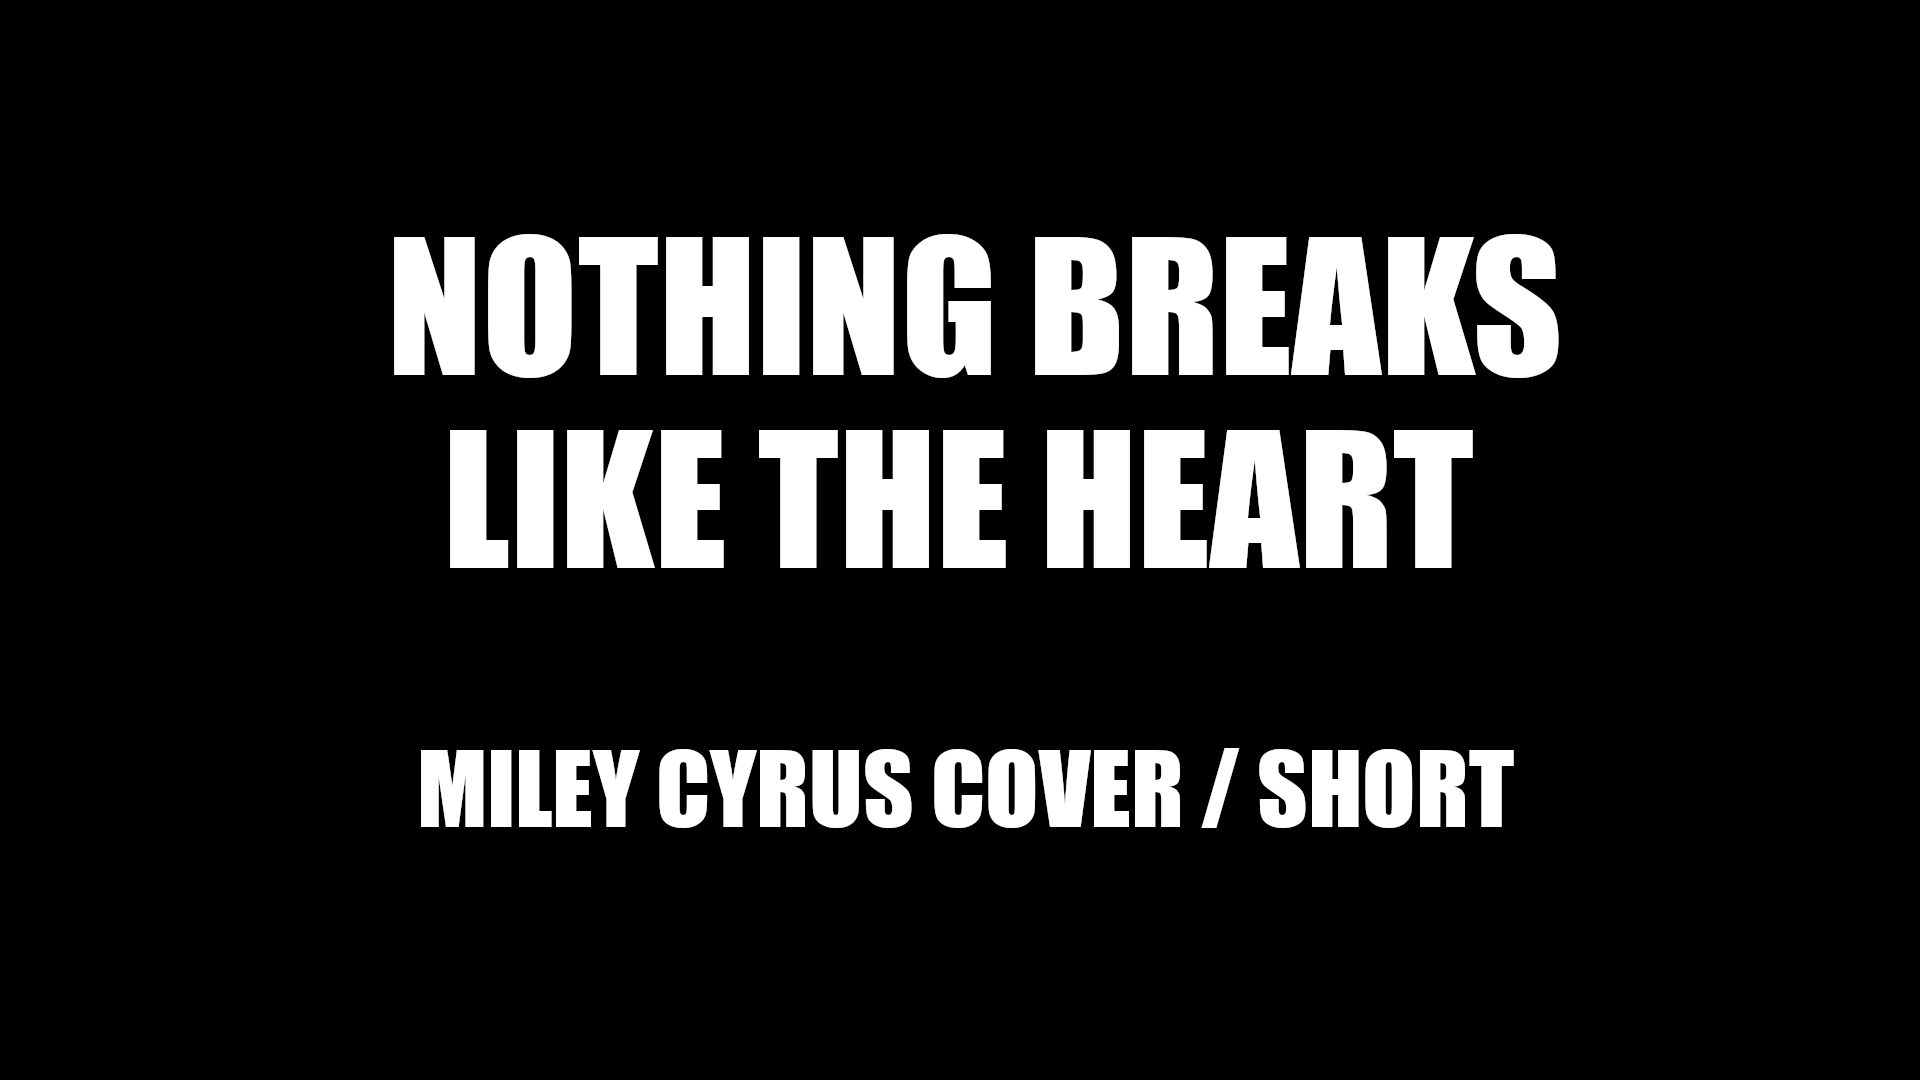 NOTHING BREAKS LIKE A HEART - MILEY CYRUIS SHORTY